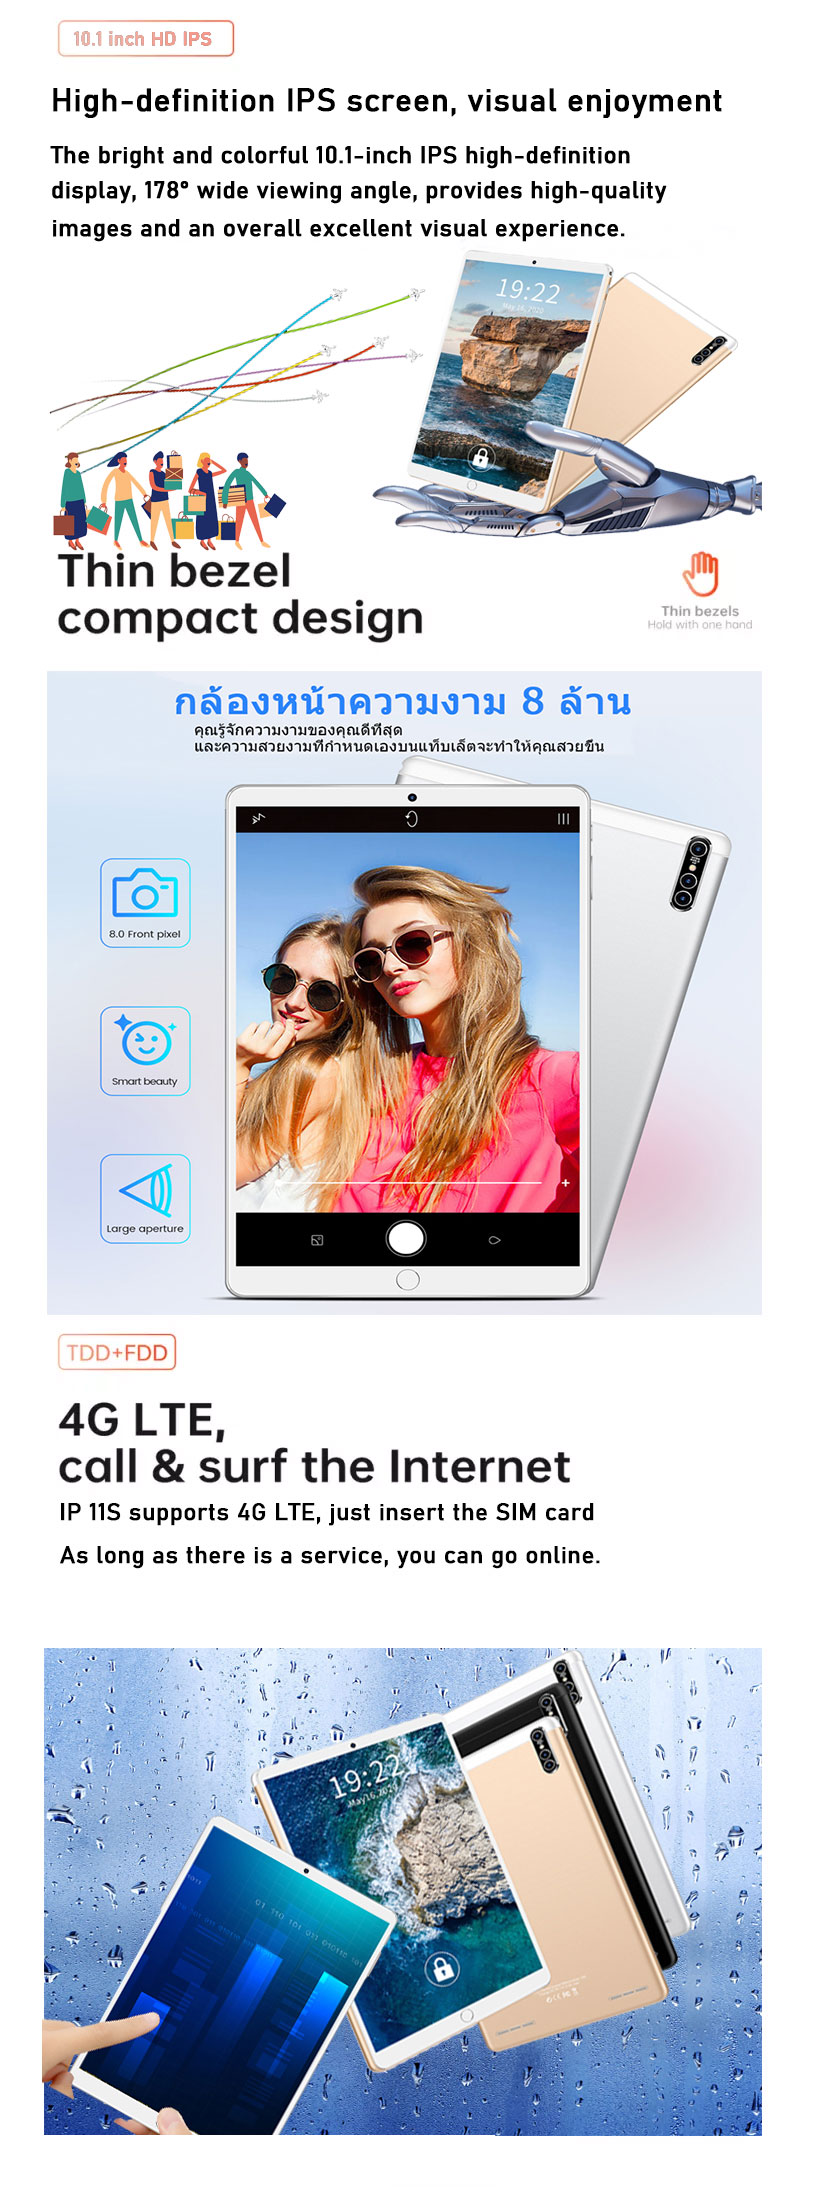 ข้อมูลประกอบของ Realmi Thailand Center แท็บเล็ตหน้าจอใหญ่ 10.1 นิ้ว แท็บเล็ตอัจฉริยะ 2-in-1 หน่วยความจำ 8+128GB กล้อง 13MP+24MP แบตเตอรี่ทนทานและจดจำลายนิ้วมือราคาไม่แพง การจดจำใบหน้ารองรับการใช้หน้าจอสัมผัสด้วยปากกา ประสบการณ์การเล่นเกมที่ราบรื่น รับประกัน 1 ปี